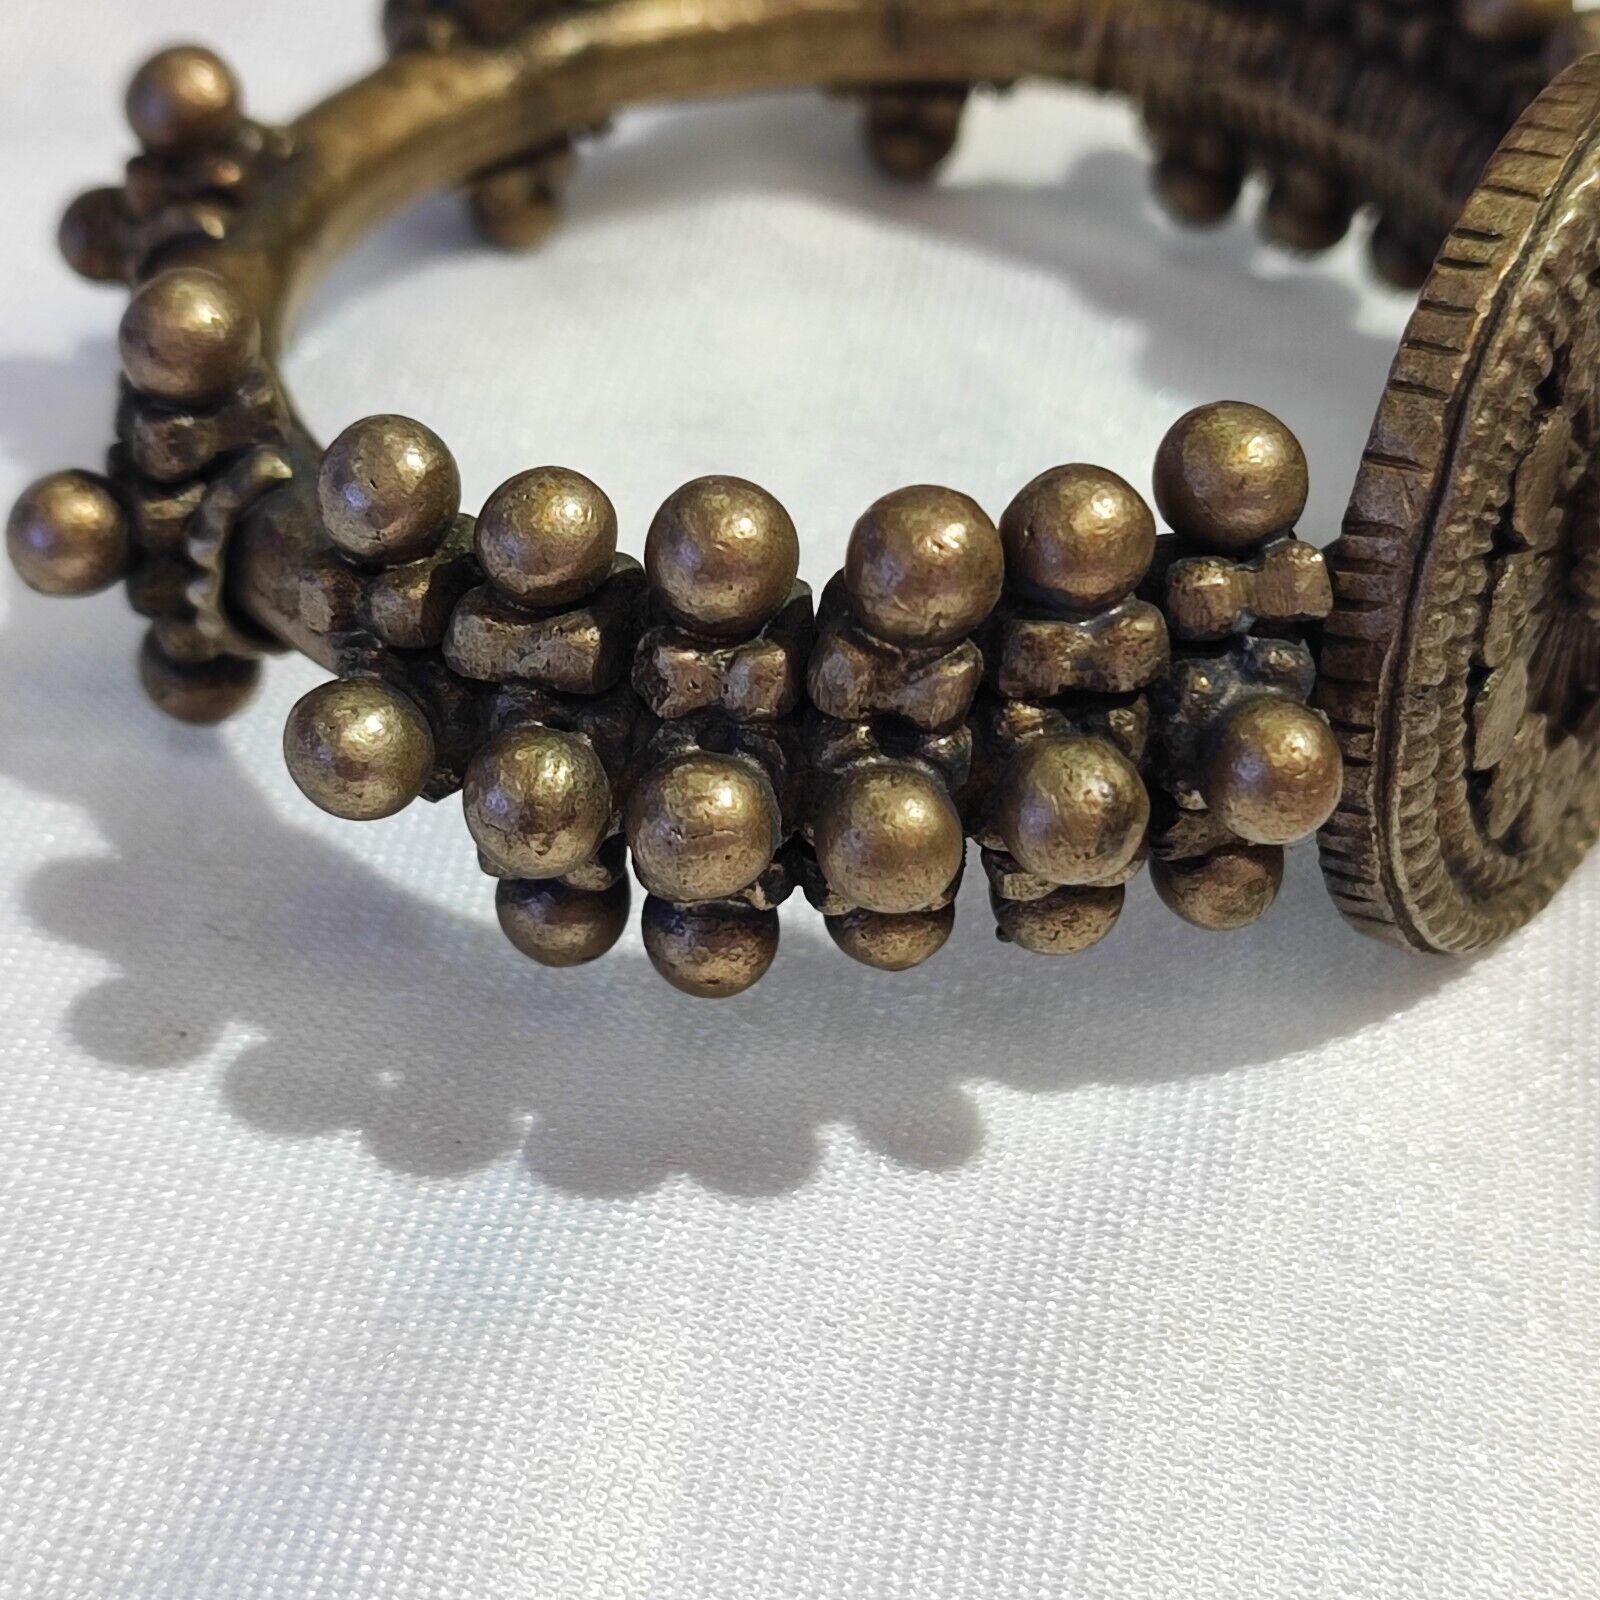 Antique Vintage Wonderful Middle Eastern Brass Bronze Bracelet